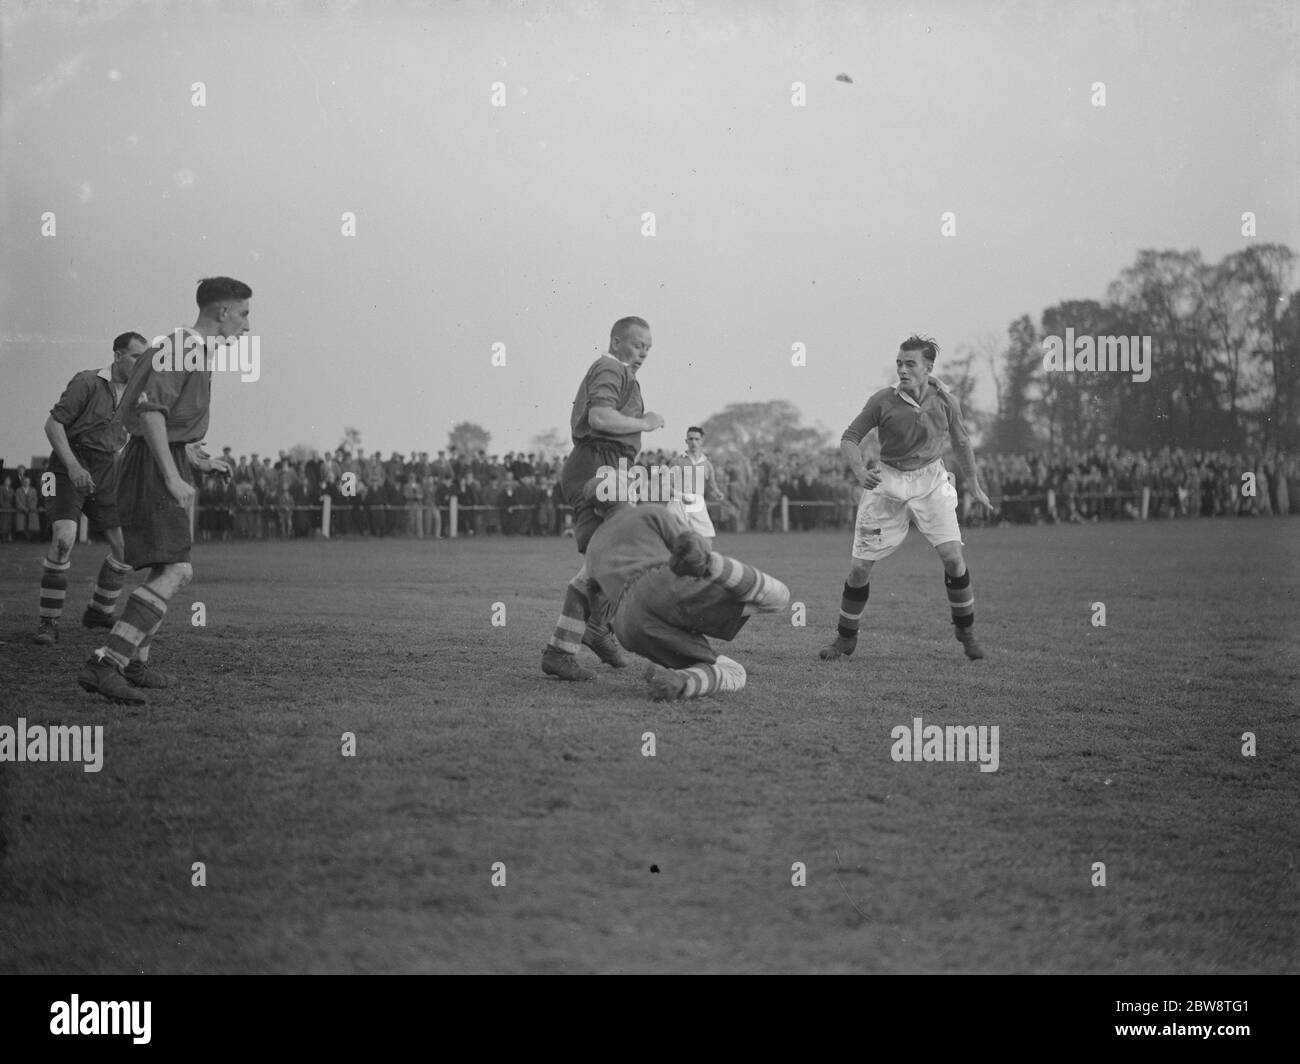 Bexleyheath und Welling gegen Dartford Reserven - Kent League - 22/10/38 der Torwart macht einen Save. 1938 Stockfoto